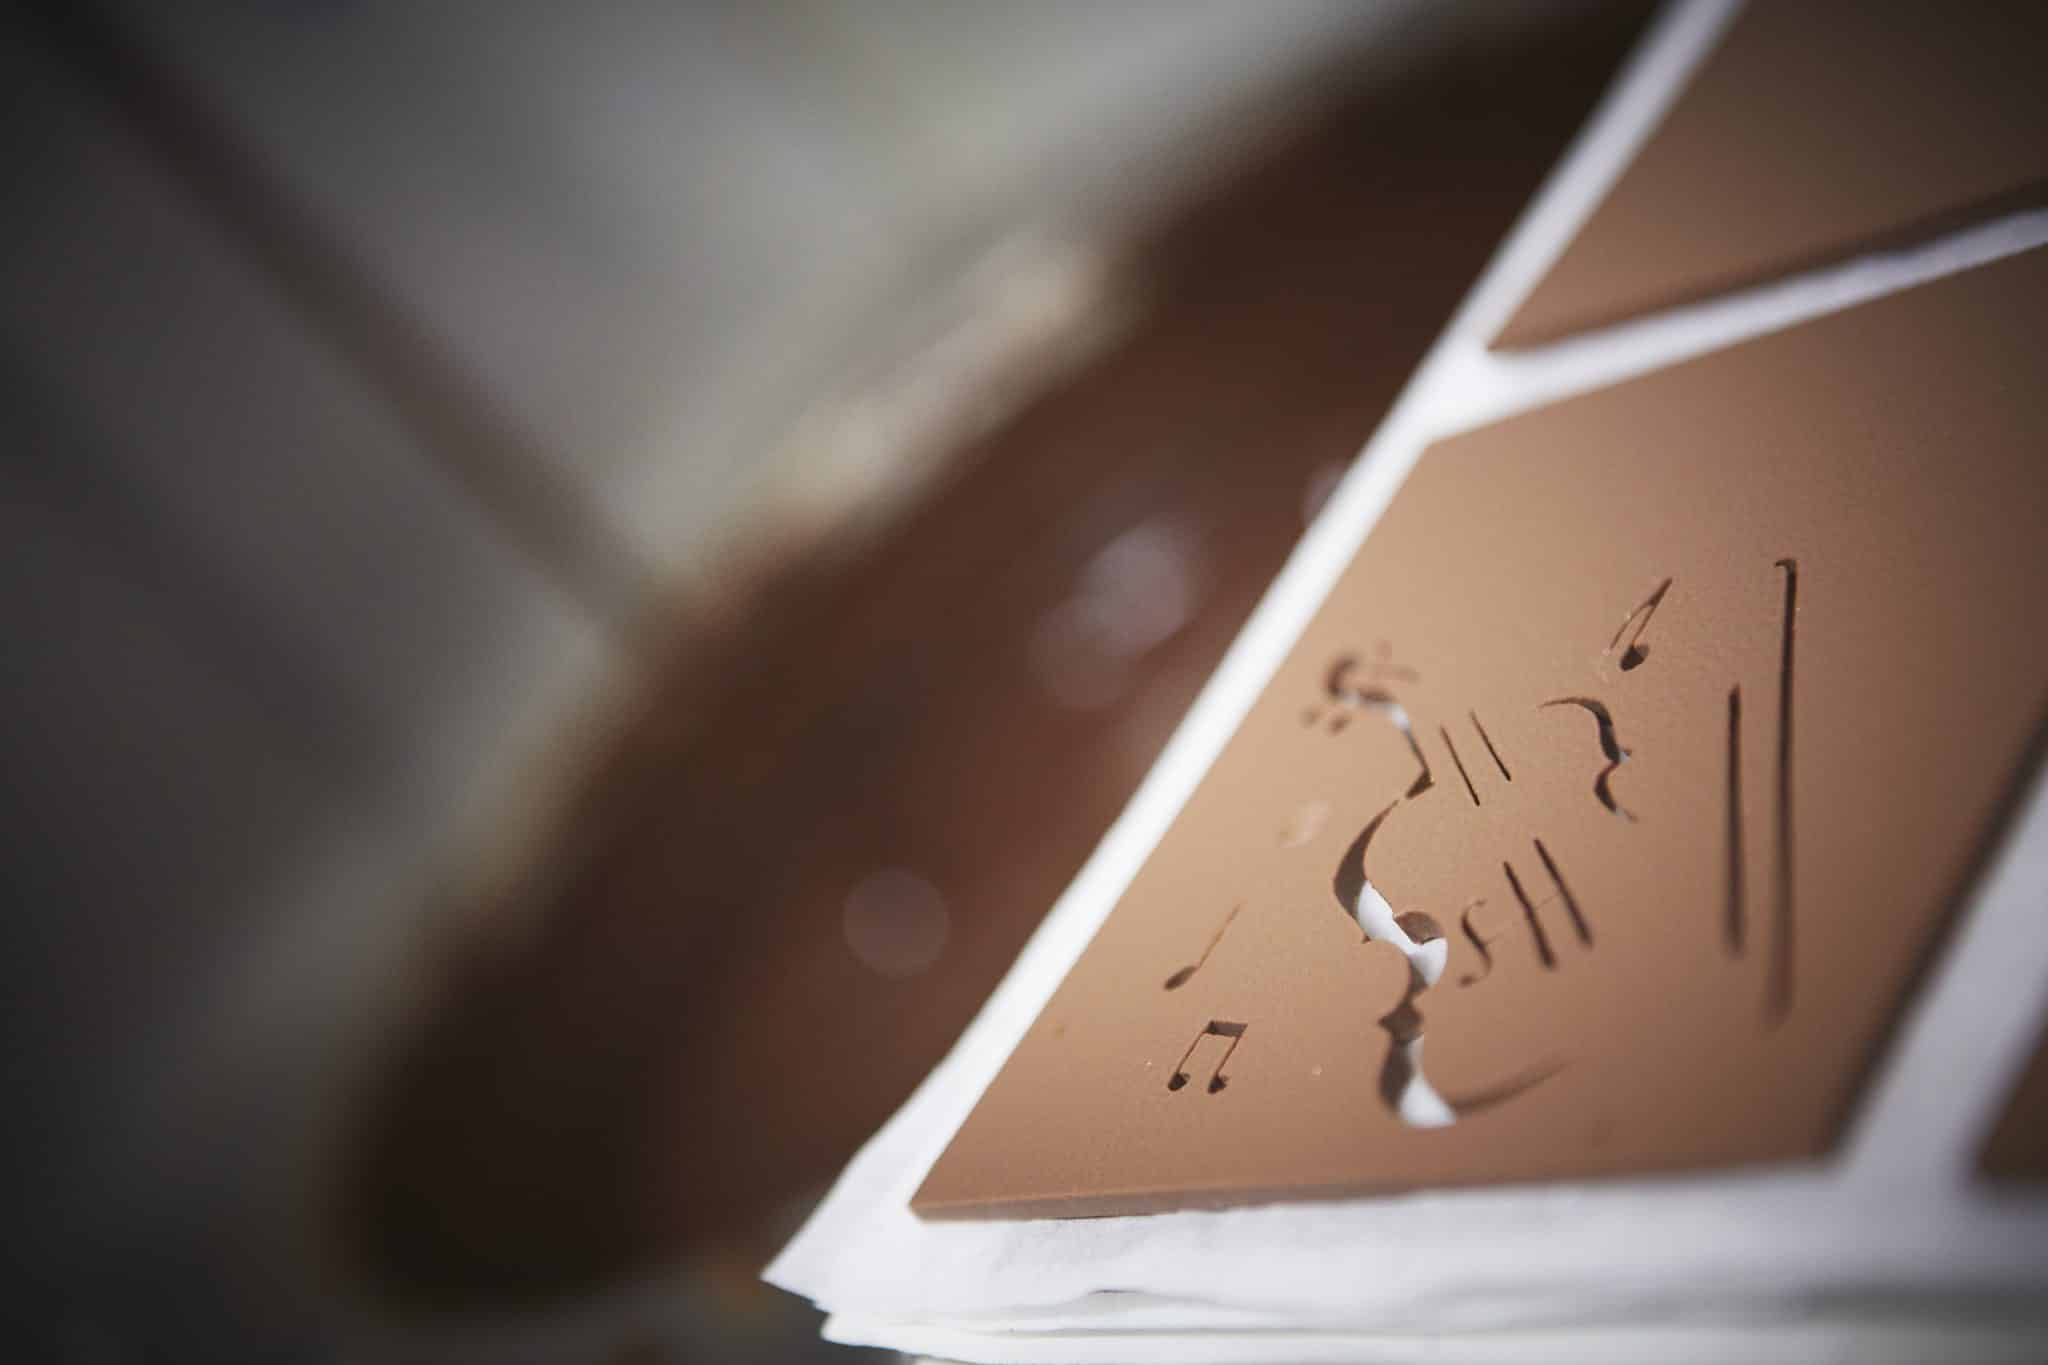 Chocolaterie Abtey - Tablette chocolat noir à personnaliser